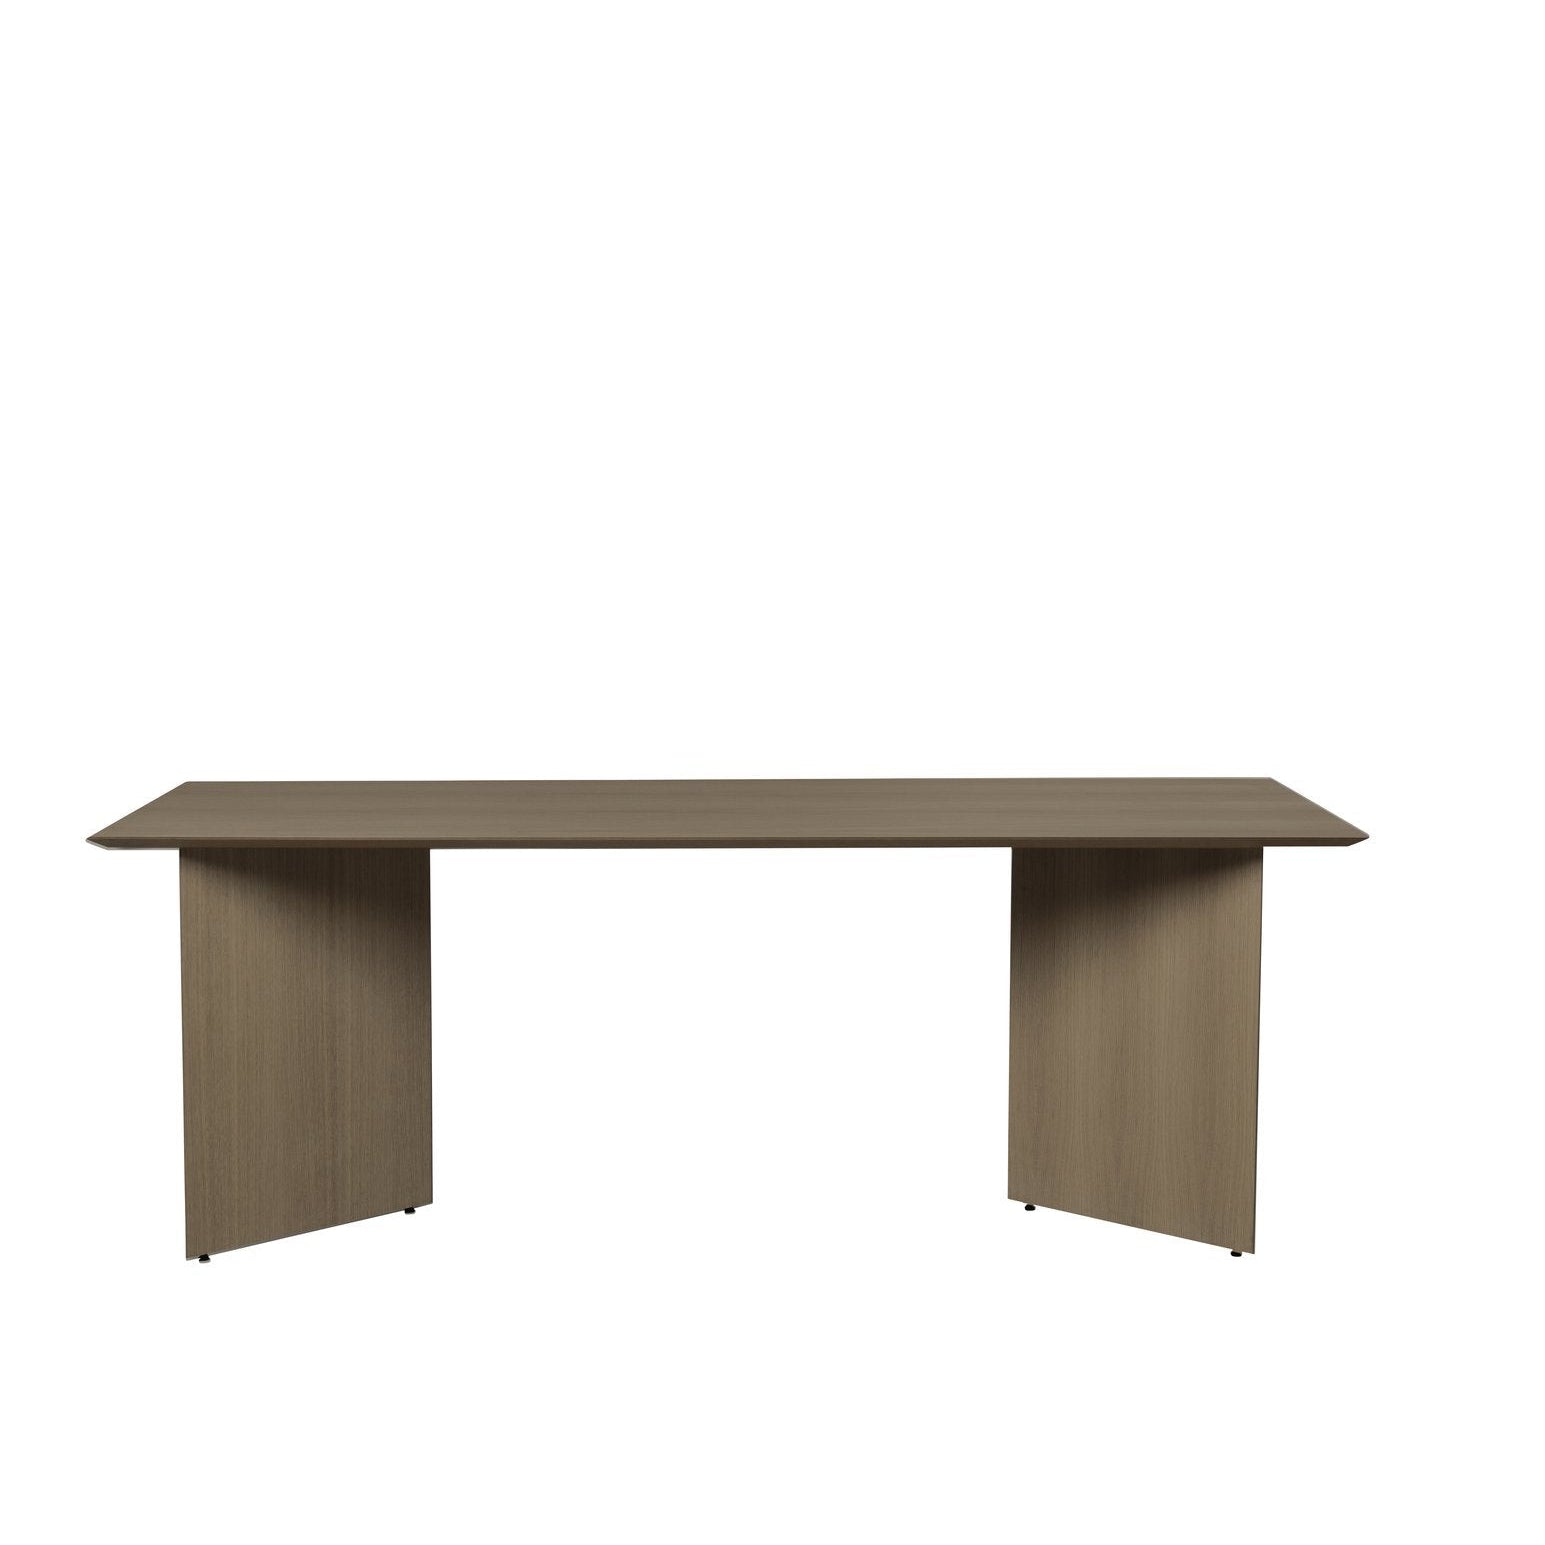 Ferm Living Mingle Table Top Dark Speneer, 210 cm